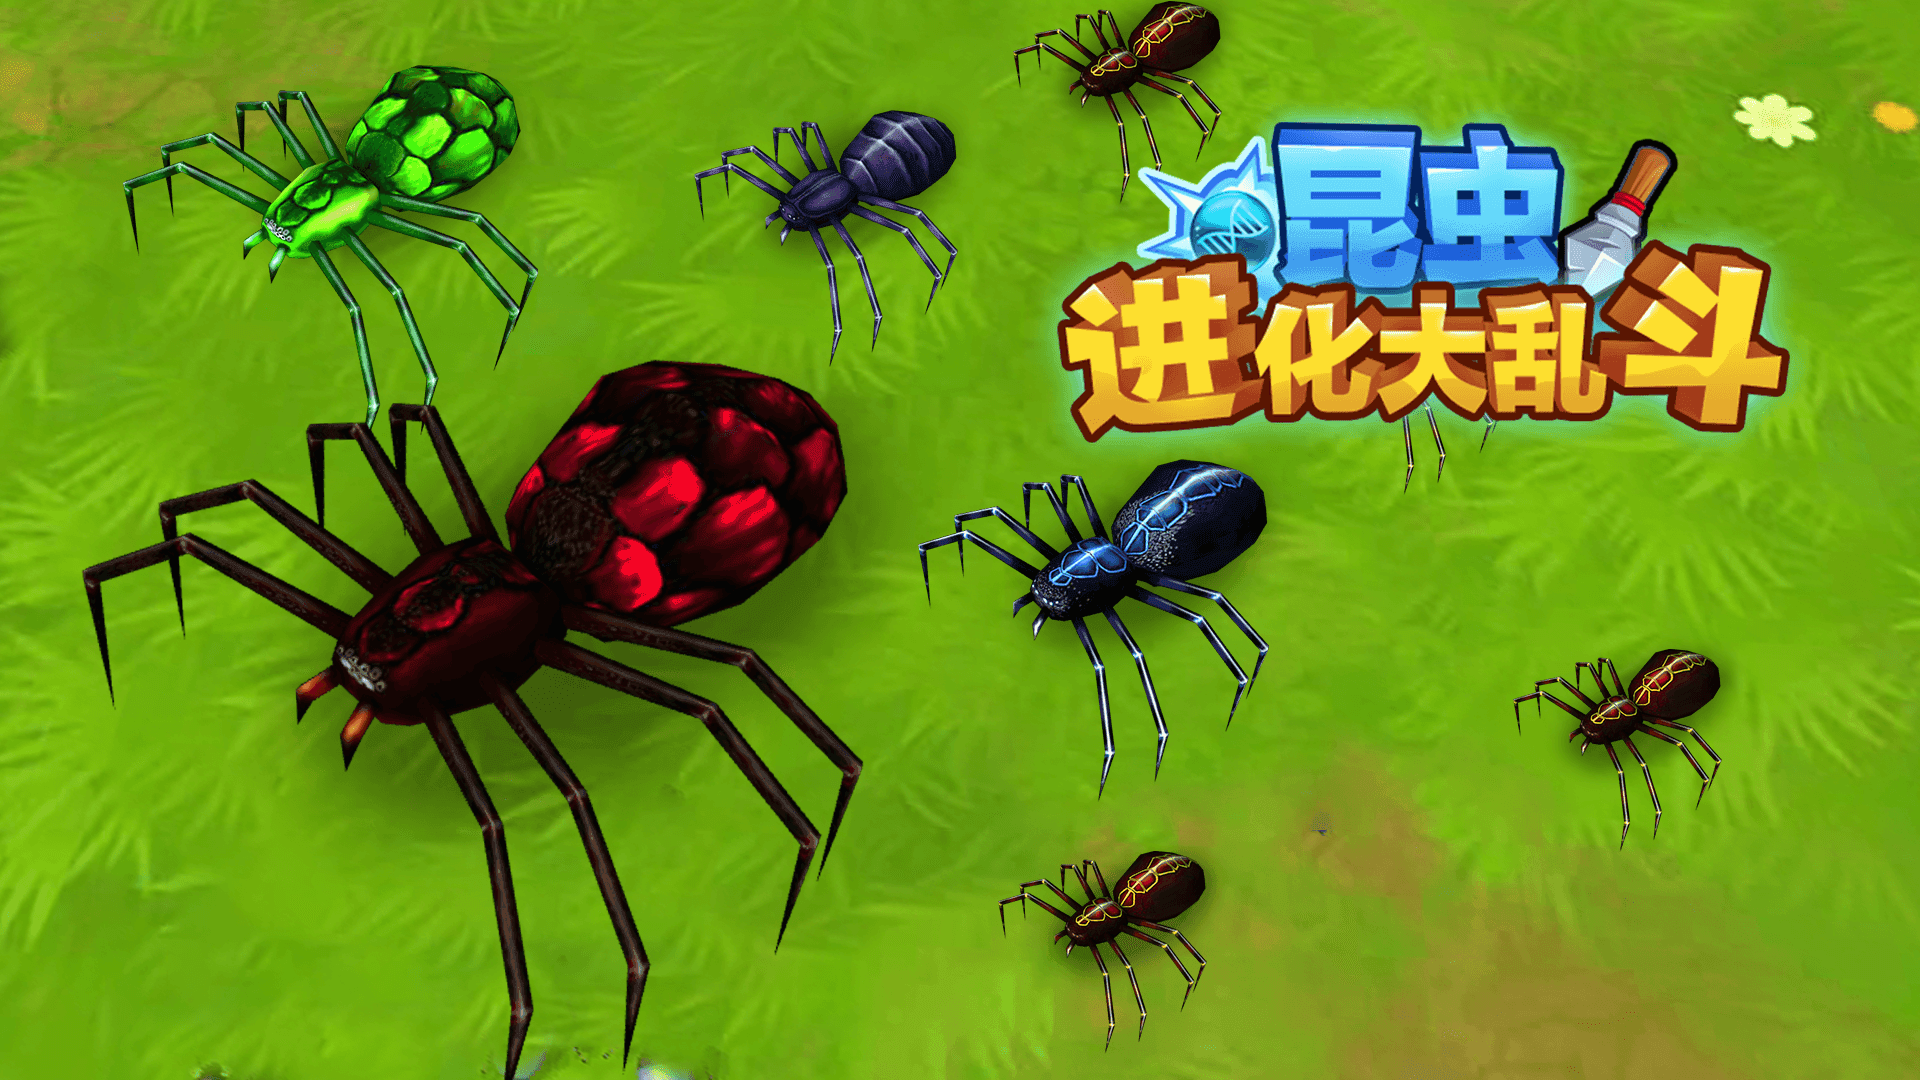 昆虫进化大乱斗游戏截图